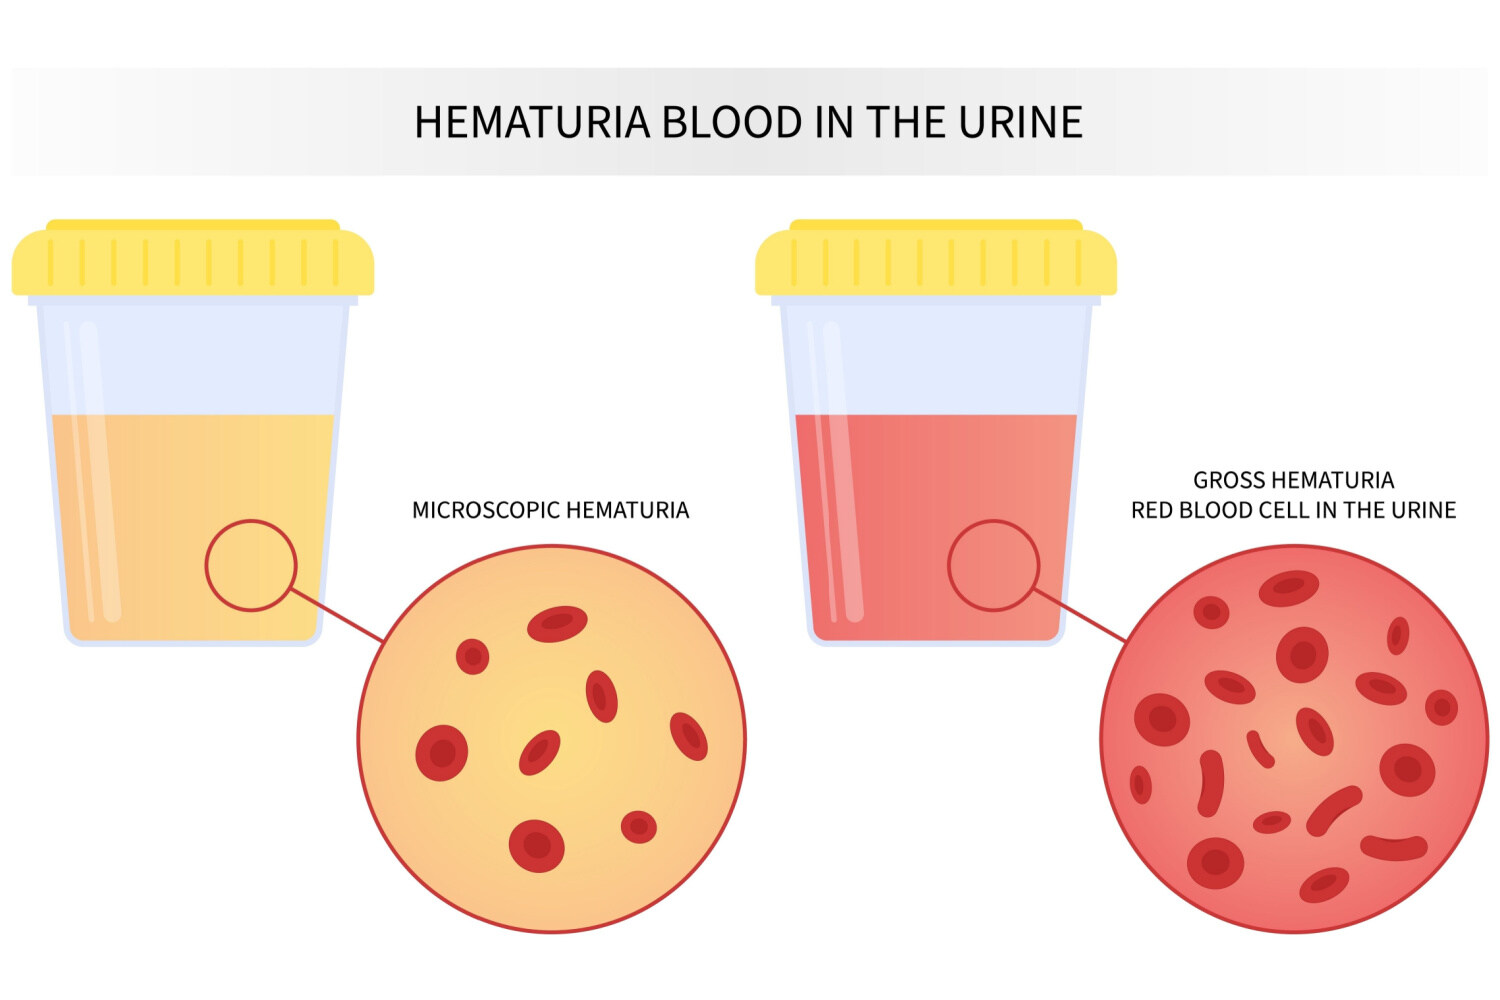 Different types of hematuria